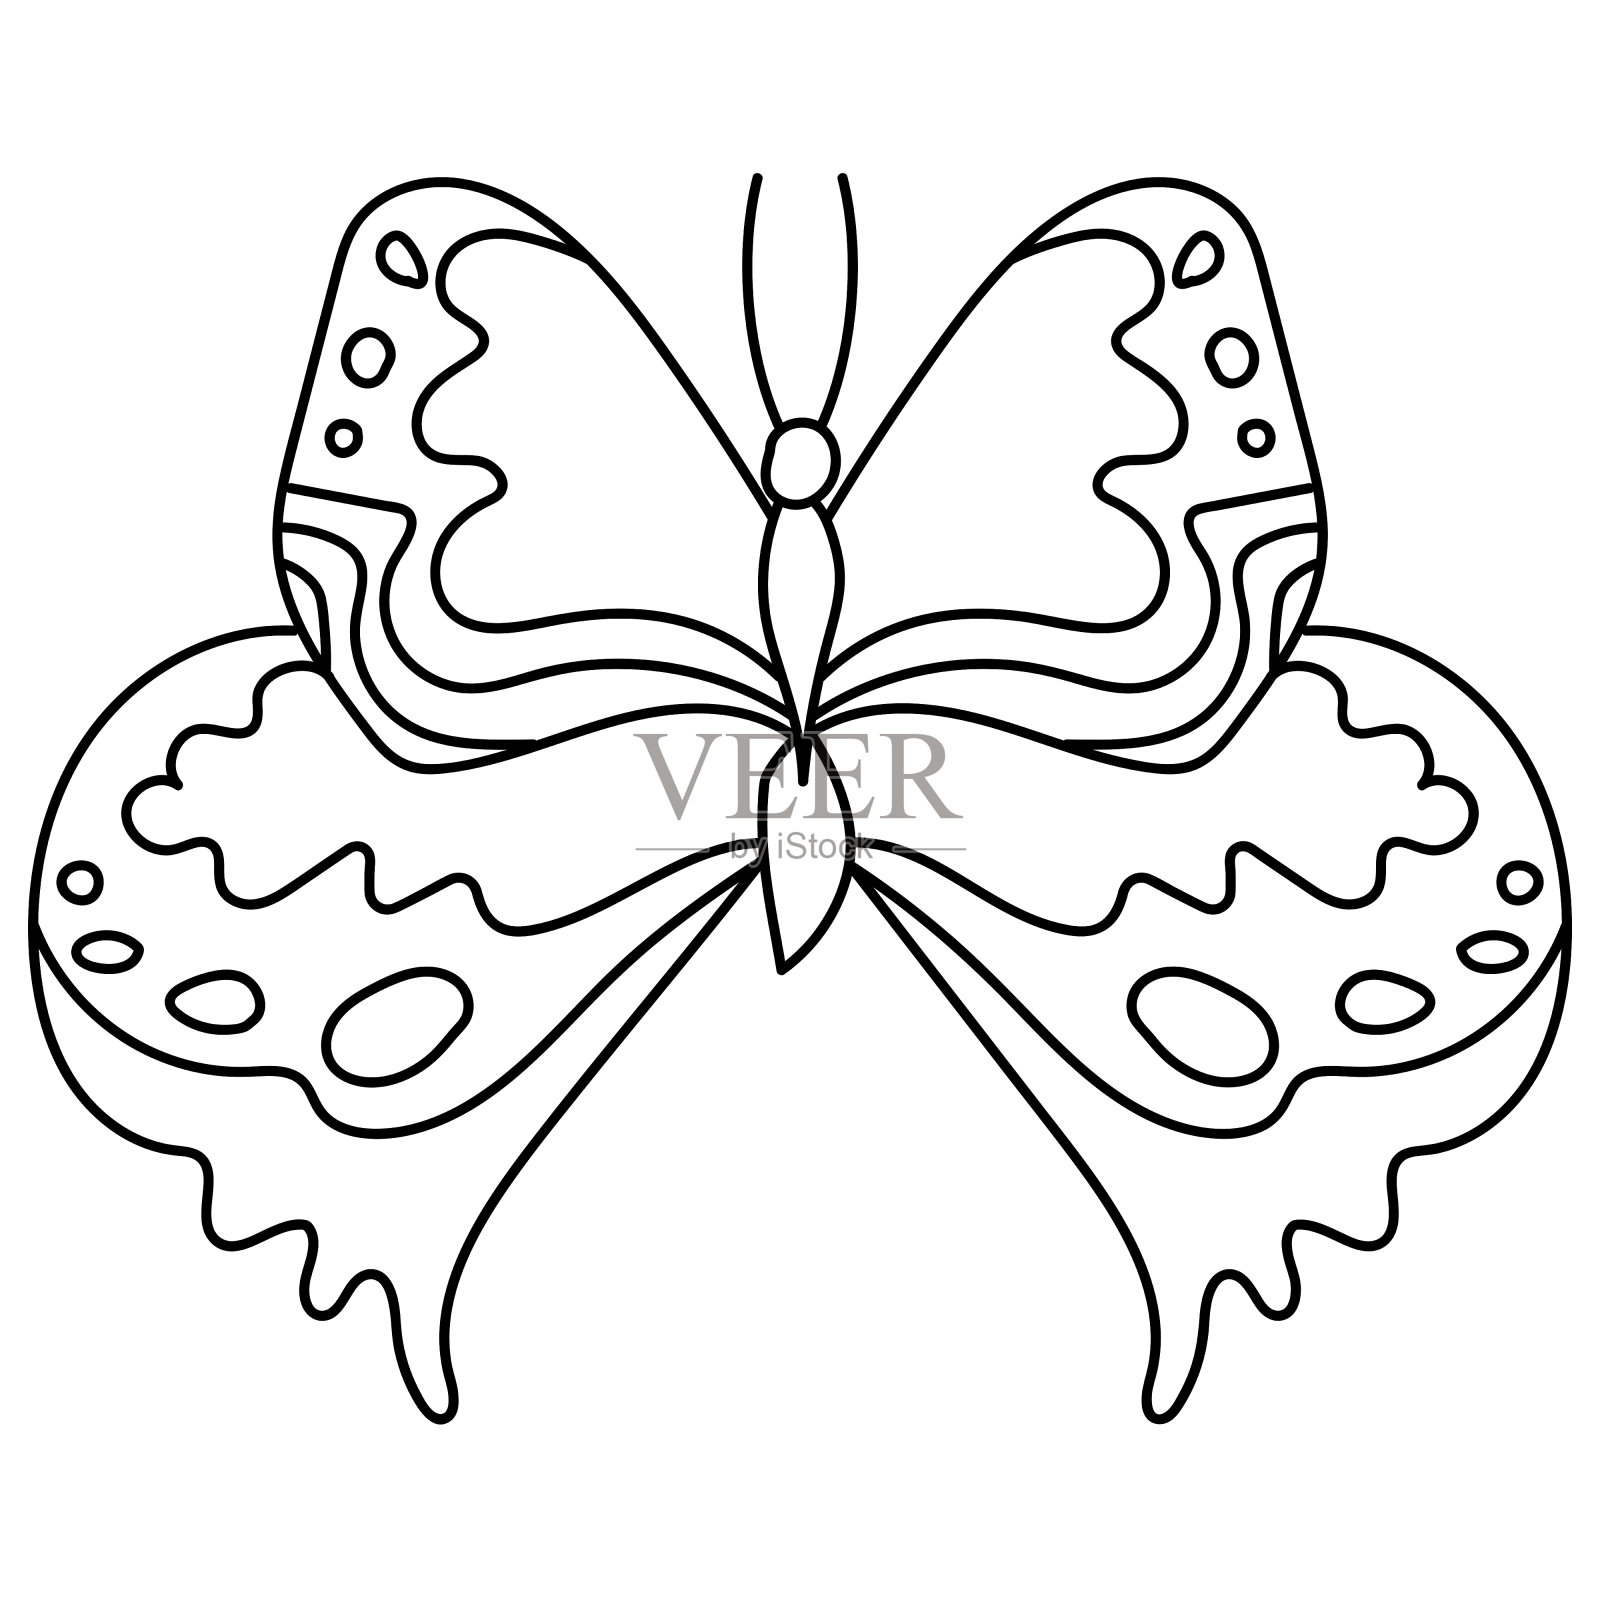 可爱简笔画教程 涂色蝴蝶的画法图解（5-8岁儿童画） - 有点网 - 好手艺